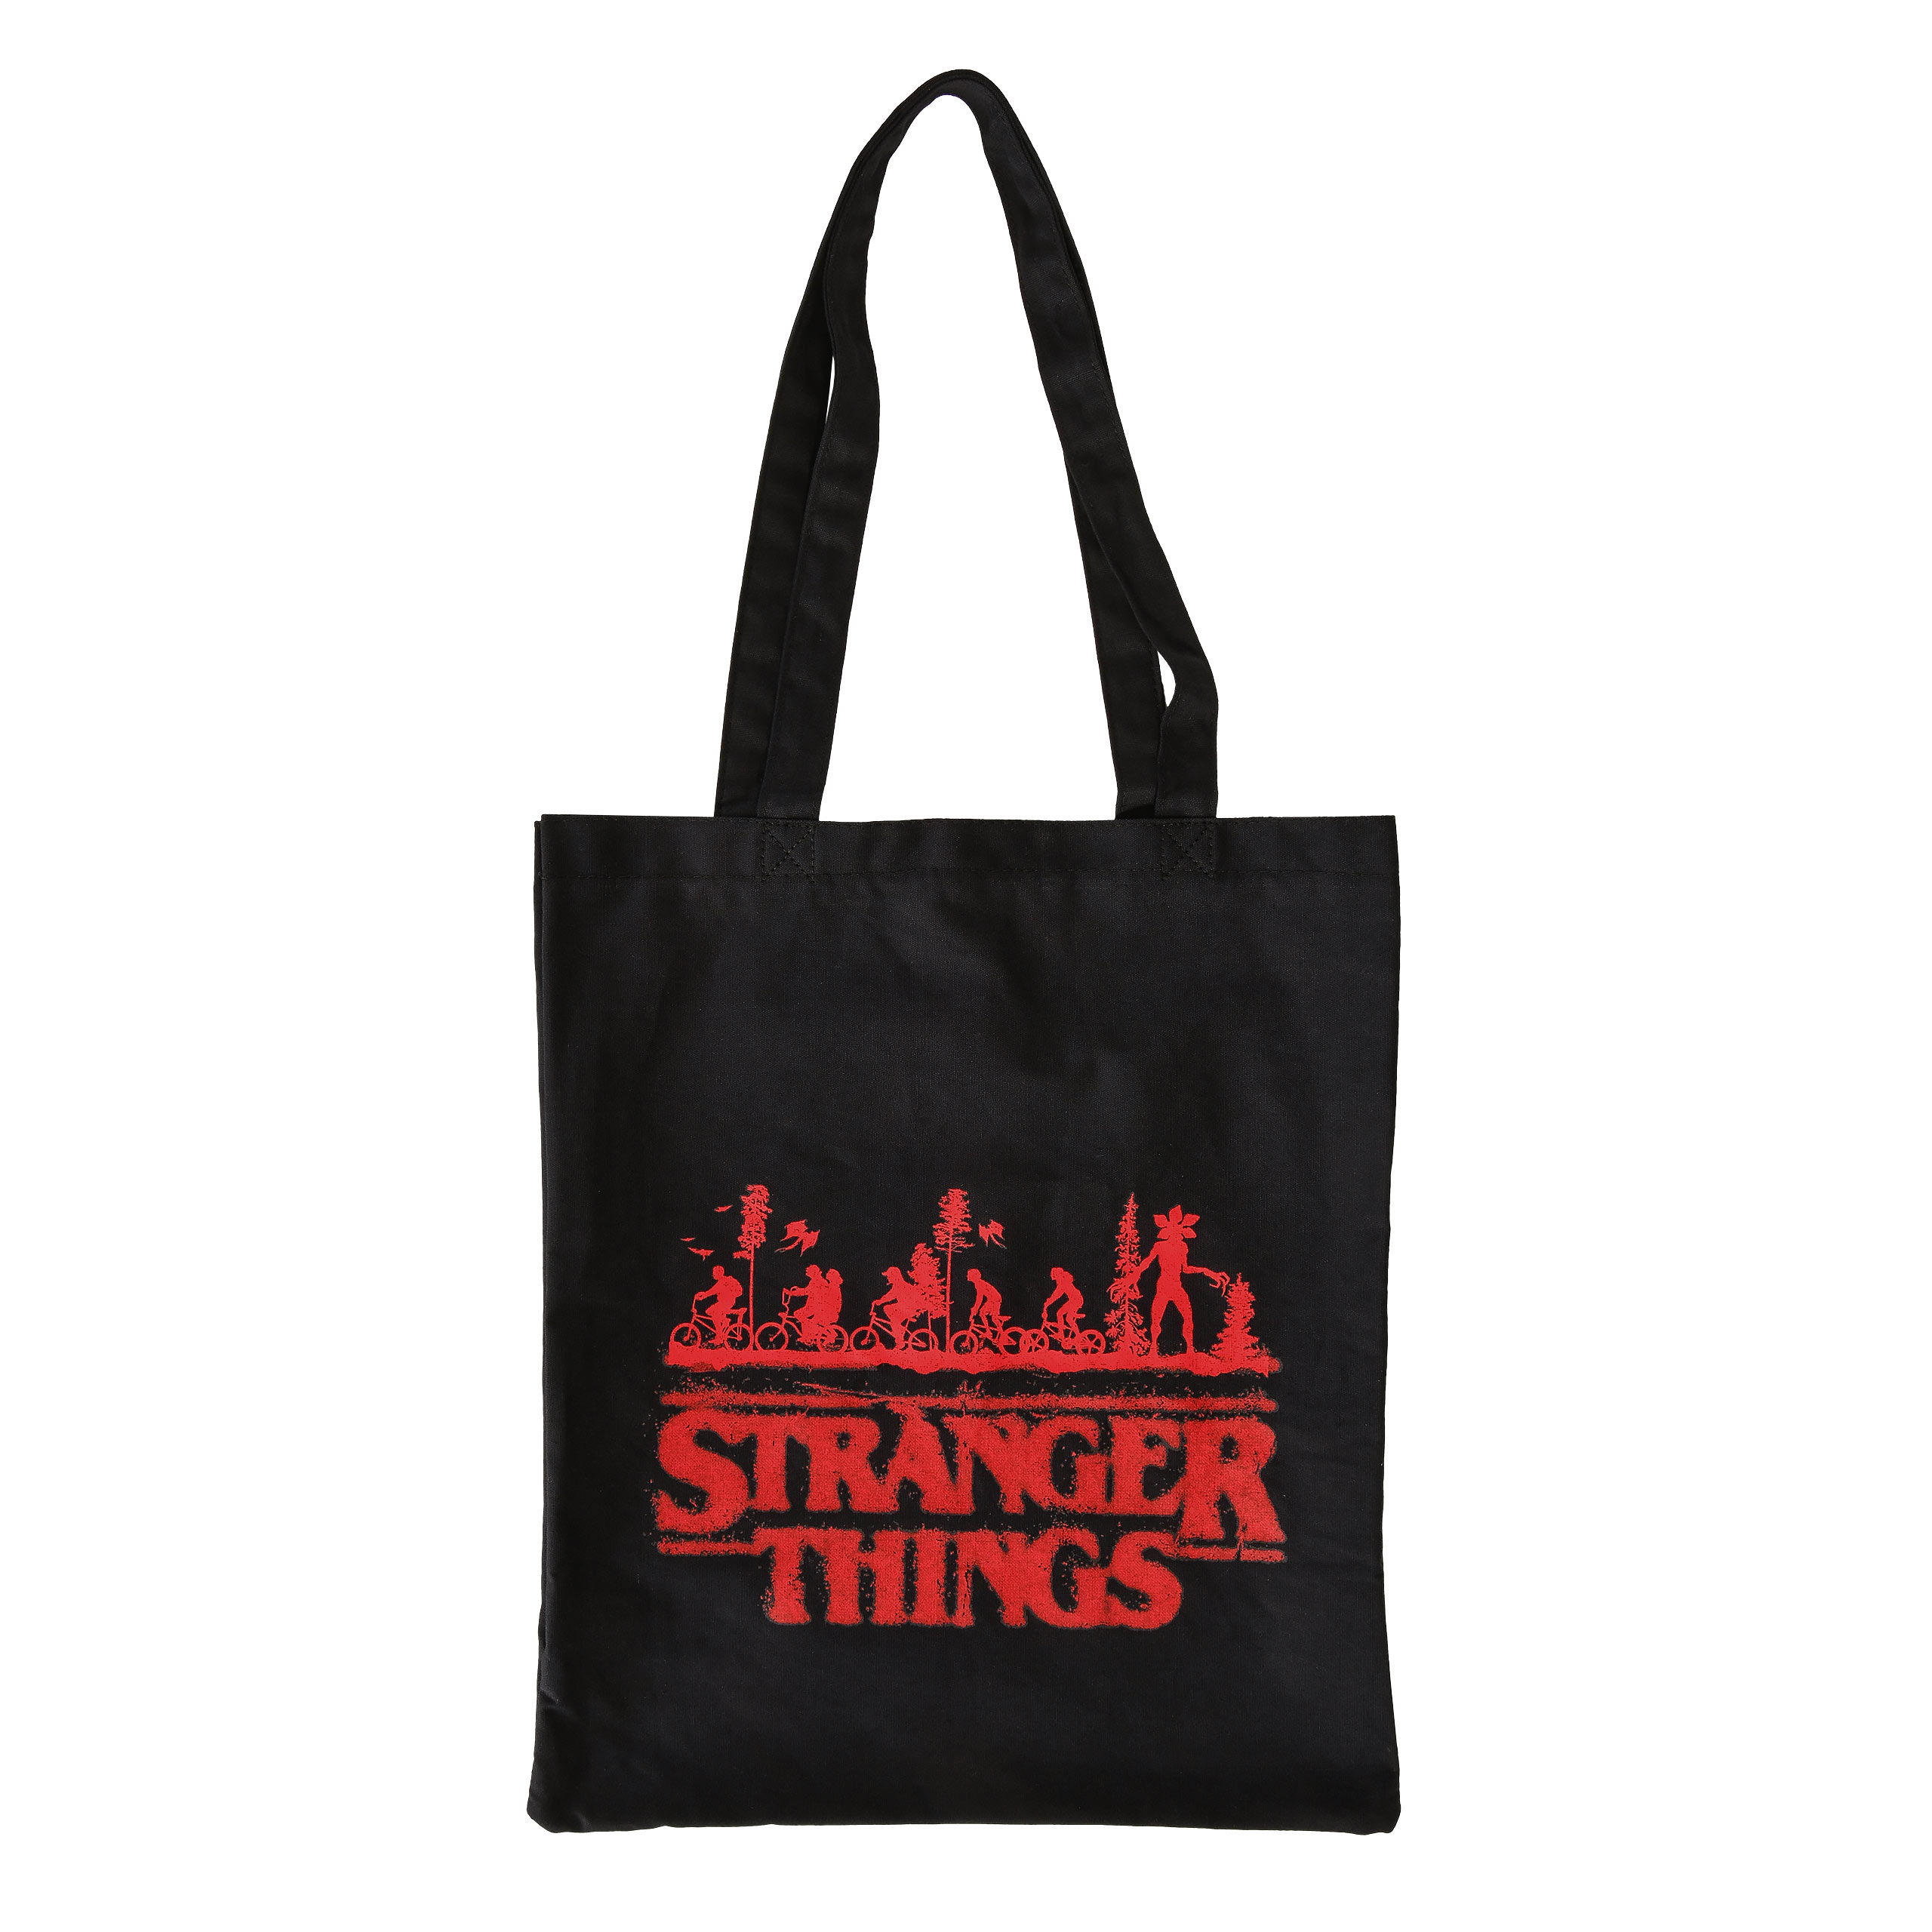 Stranger Things - Logo Tote Bag